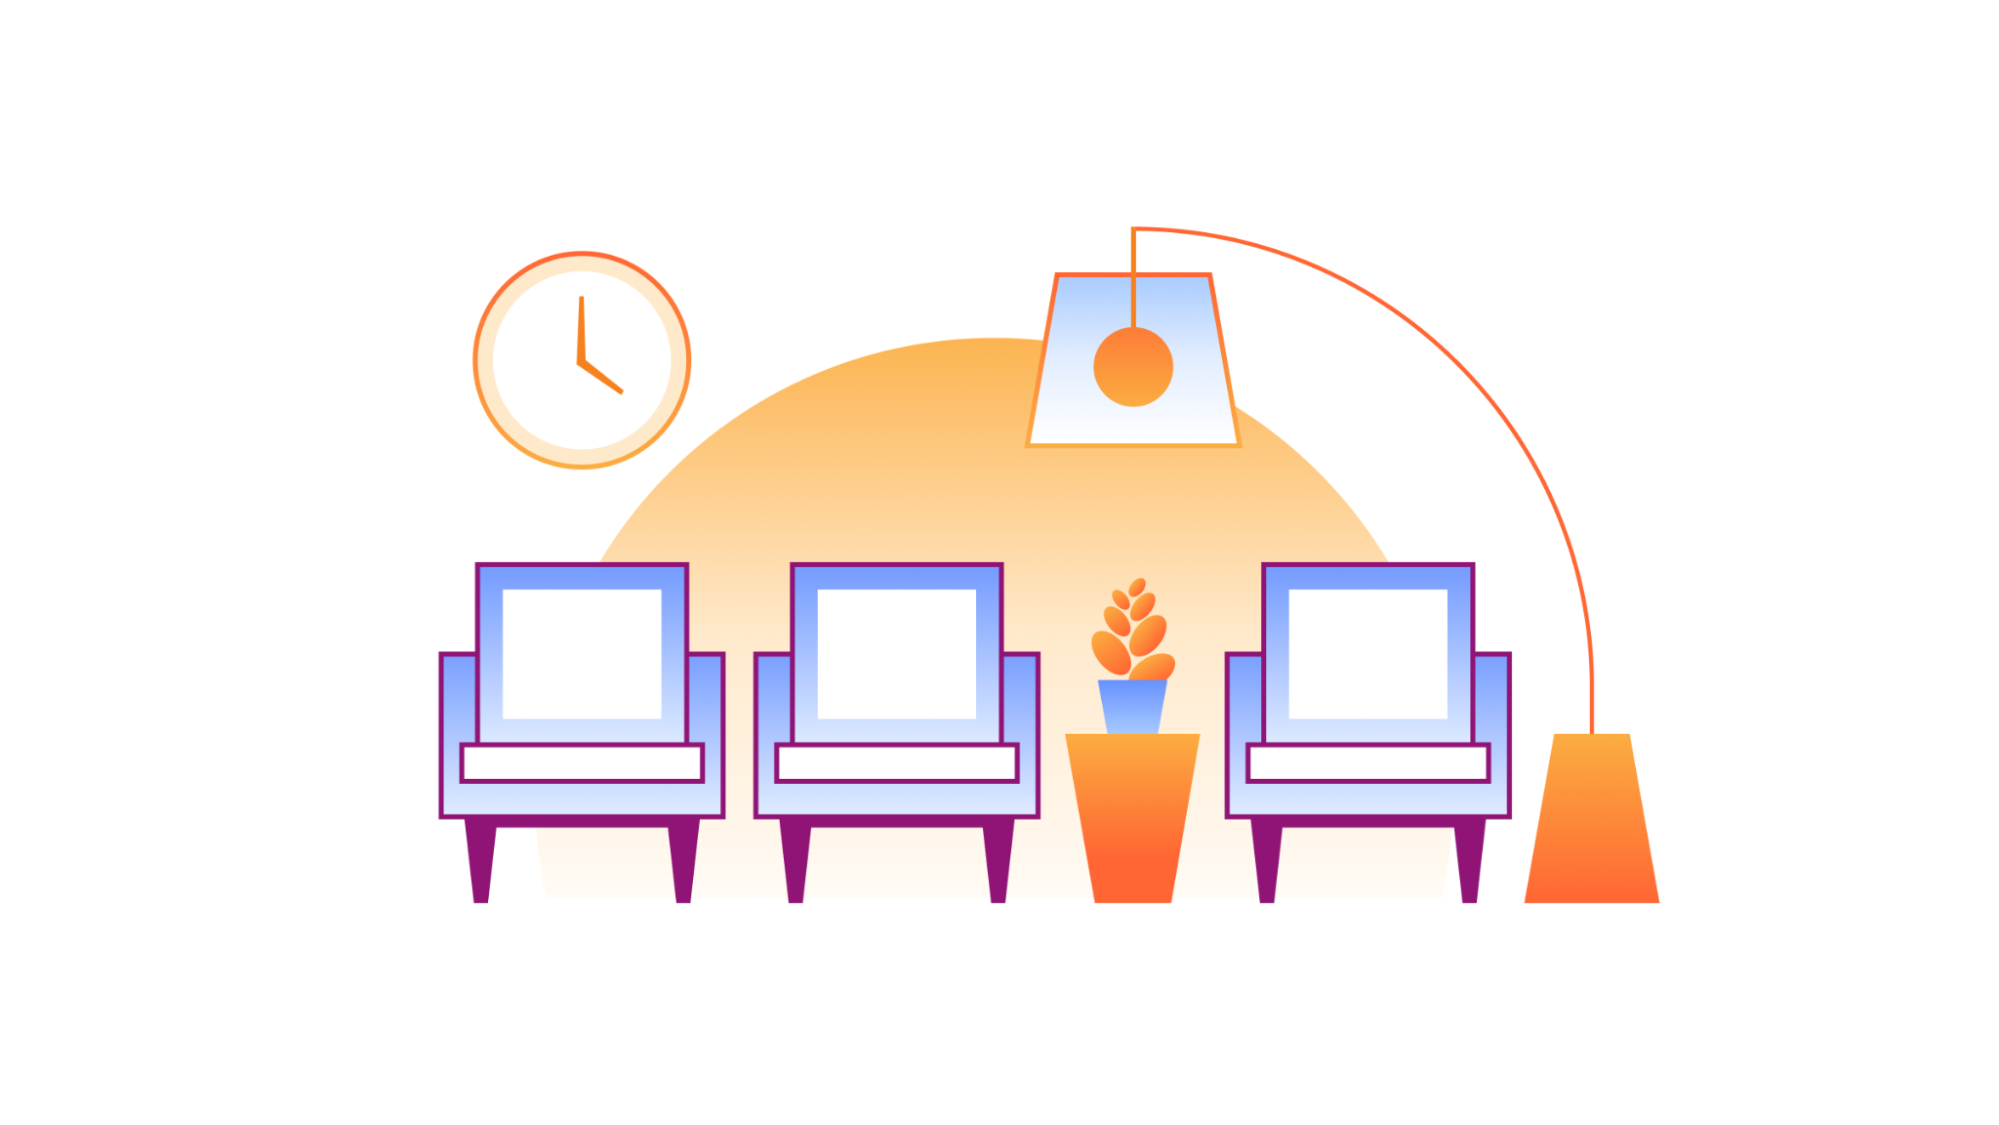 Cloudflareの高度に分散されたネットワーク上での、Waiting Roomによるキューイング決定の様子